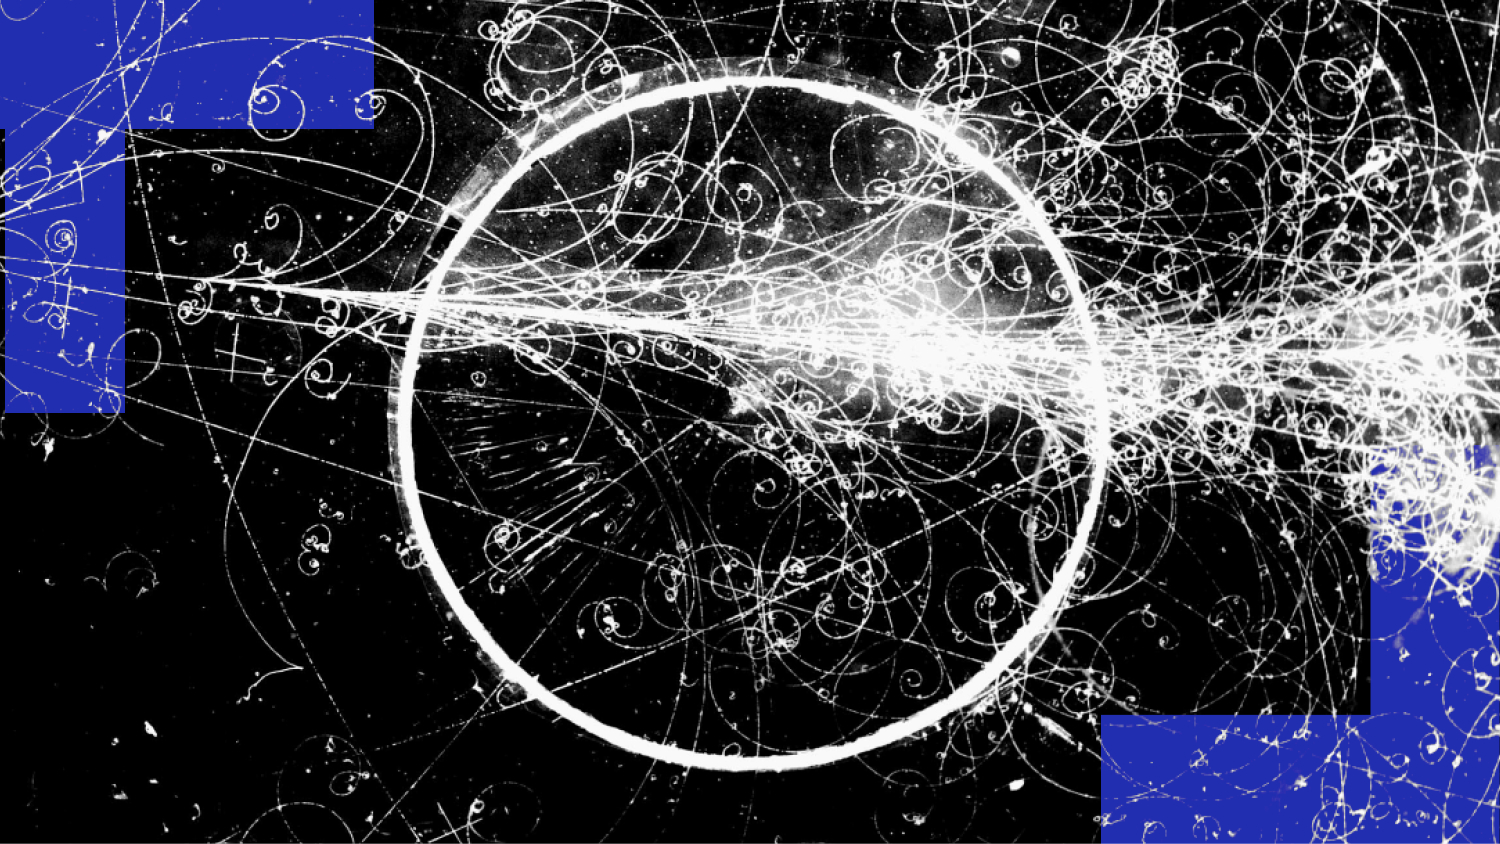 Una composizione astratta digitale con linee bianche dinamiche e vortici su sfondo nero, che incorpora alcune forme rettangolari blu che sembrano scomparire come antimateria.